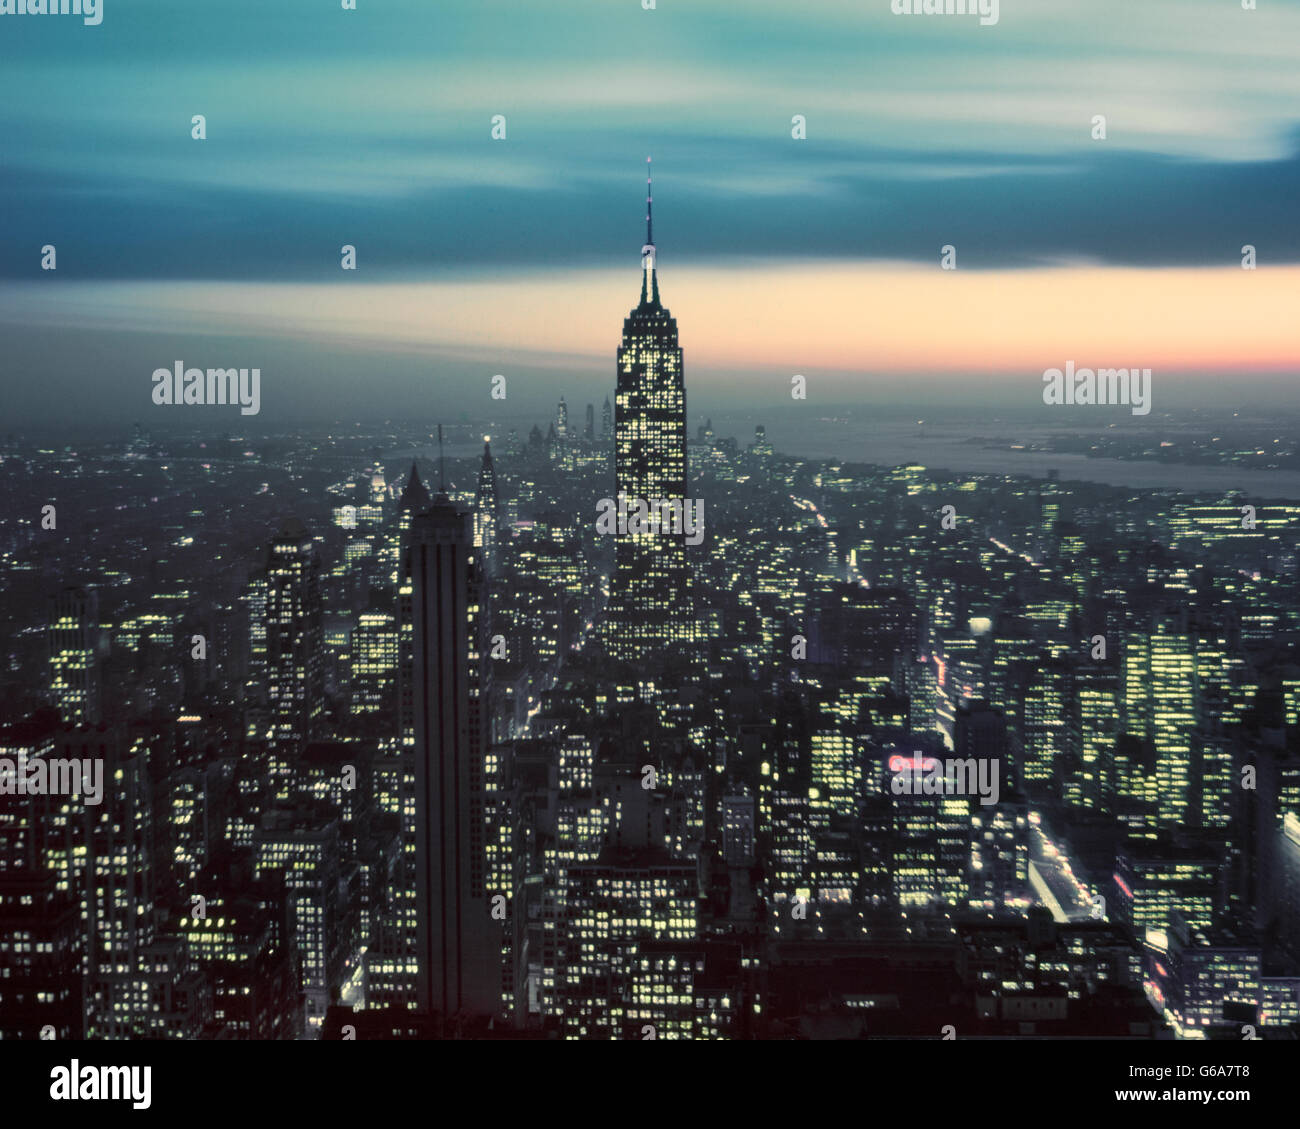 Degli anni Cinquanta vista notturna di Empire State Building e la parte inferiore di Manhattan guardando verso sud dalla RCA BUILDING DI NEW YORK CITY STATI UNITI D'AMERICA Foto Stock